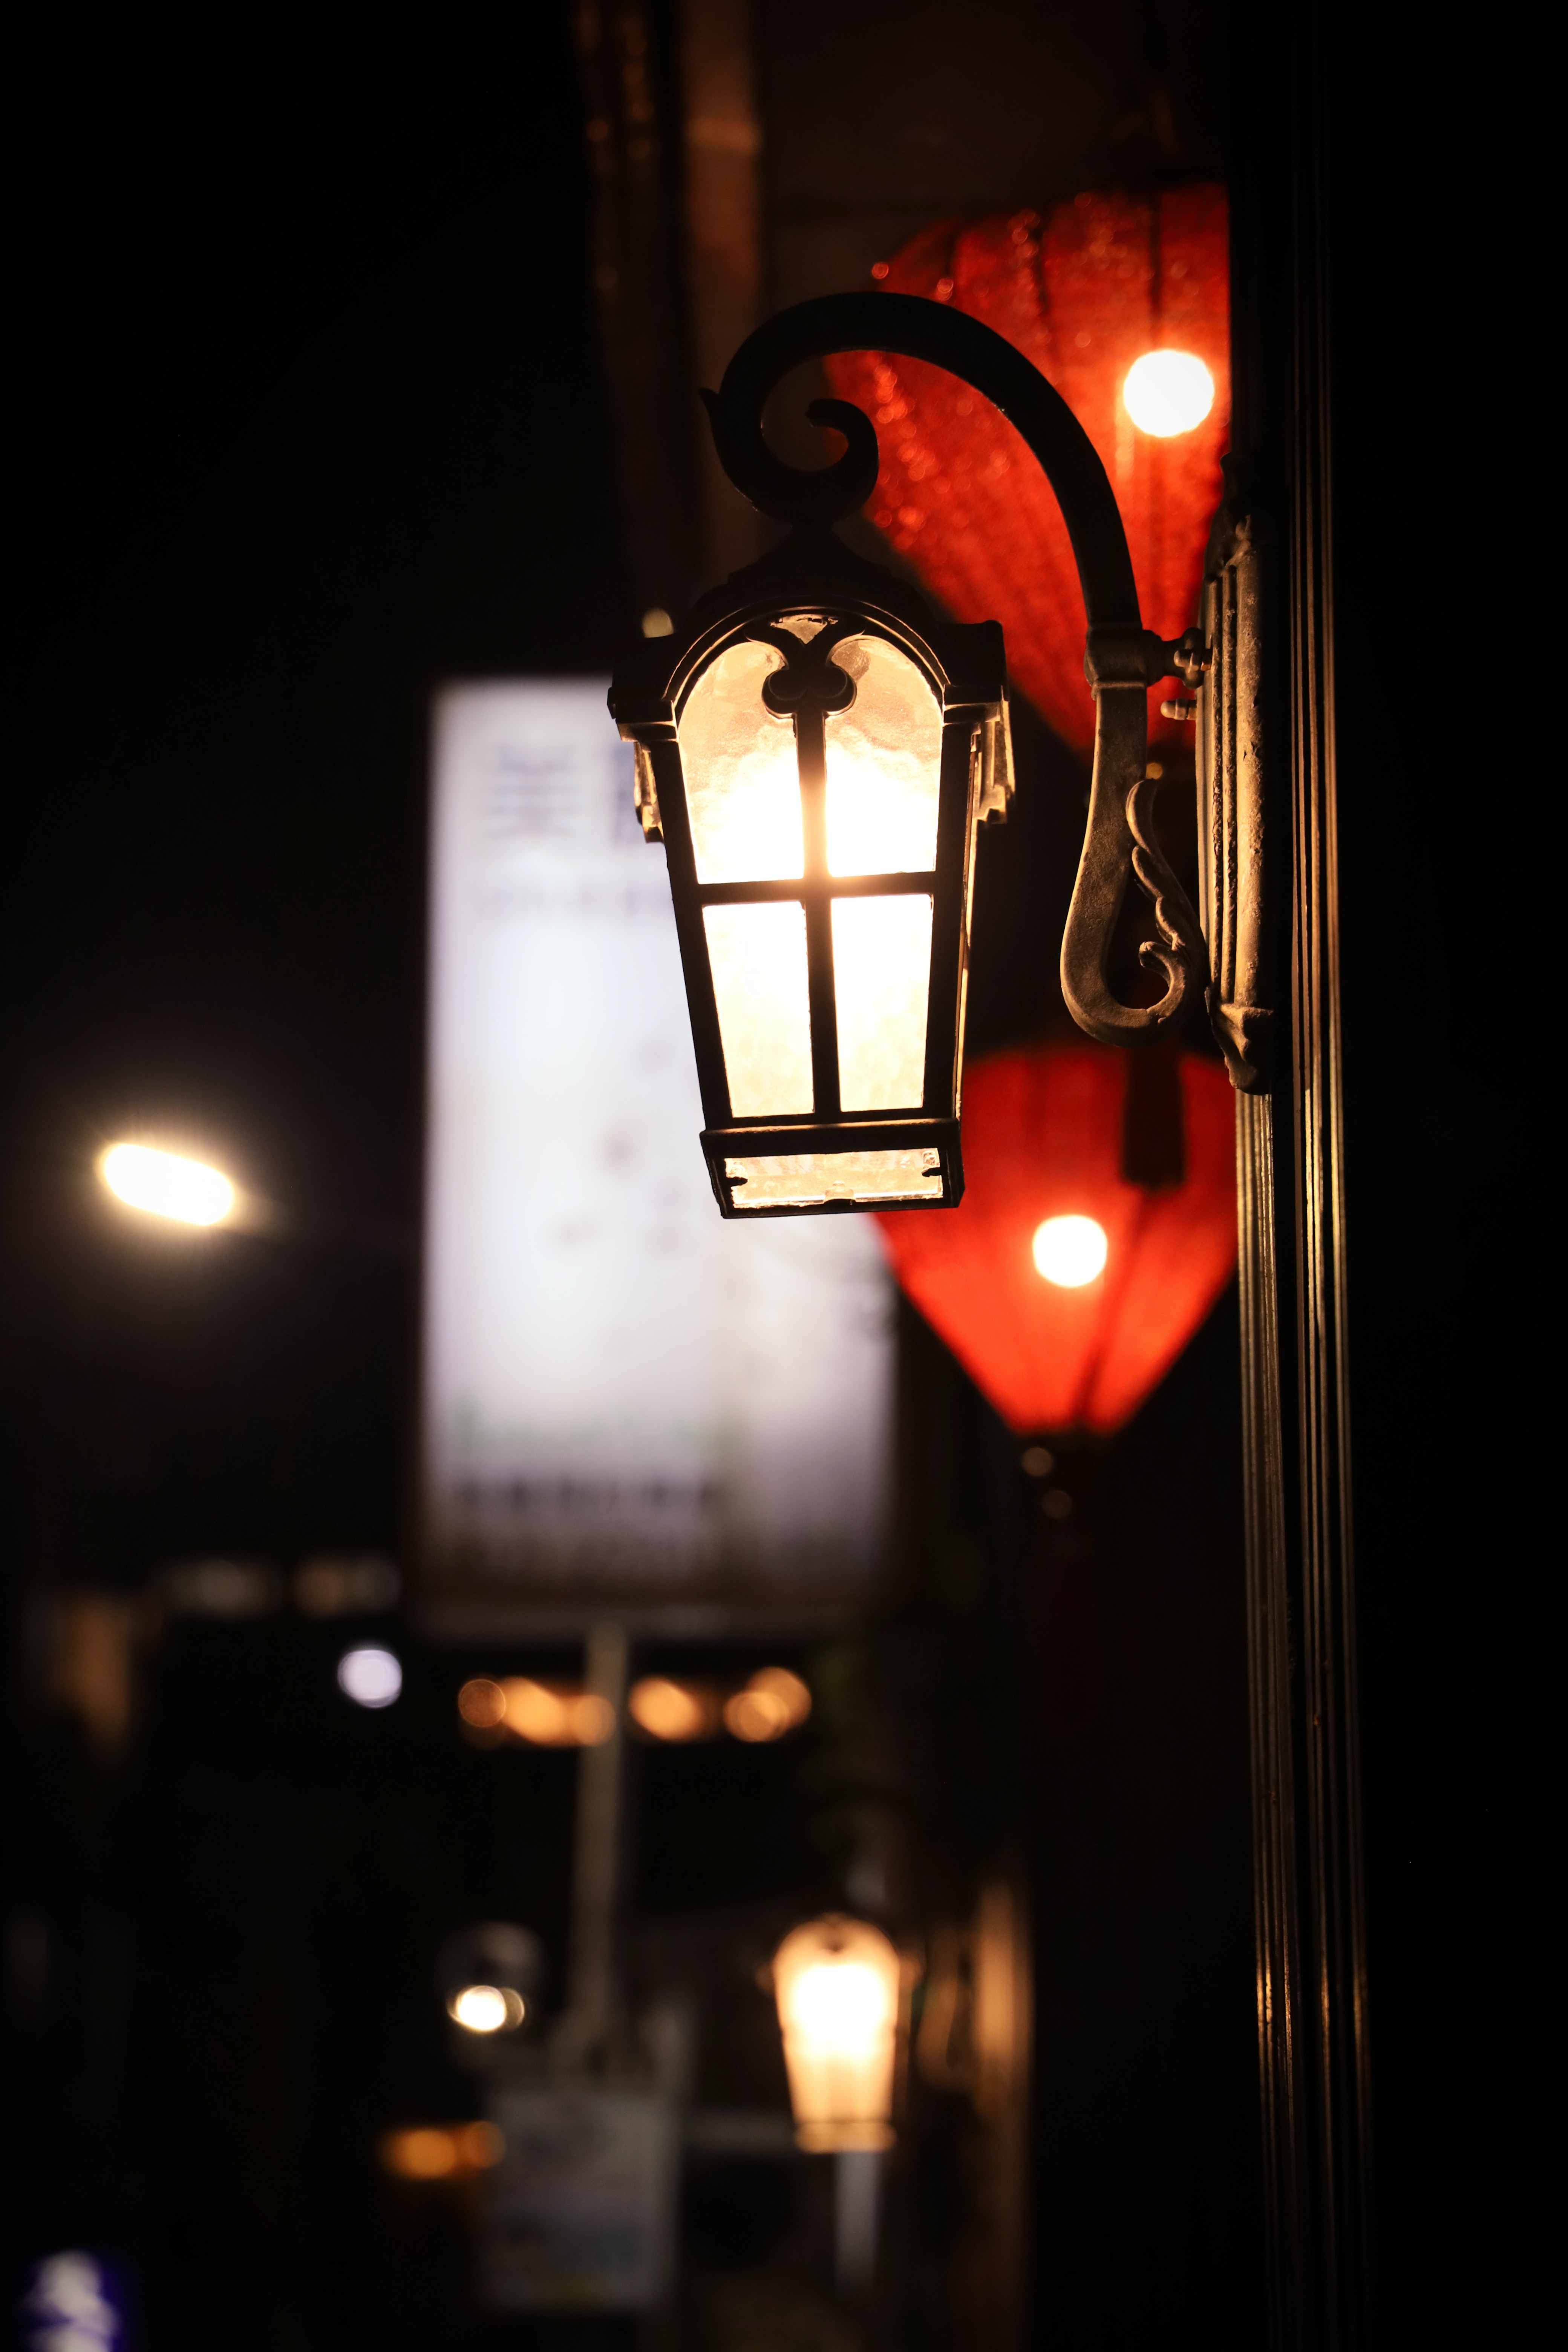 miscellanea, miscellaneous, blur, smooth, lamp, lantern, glow, street